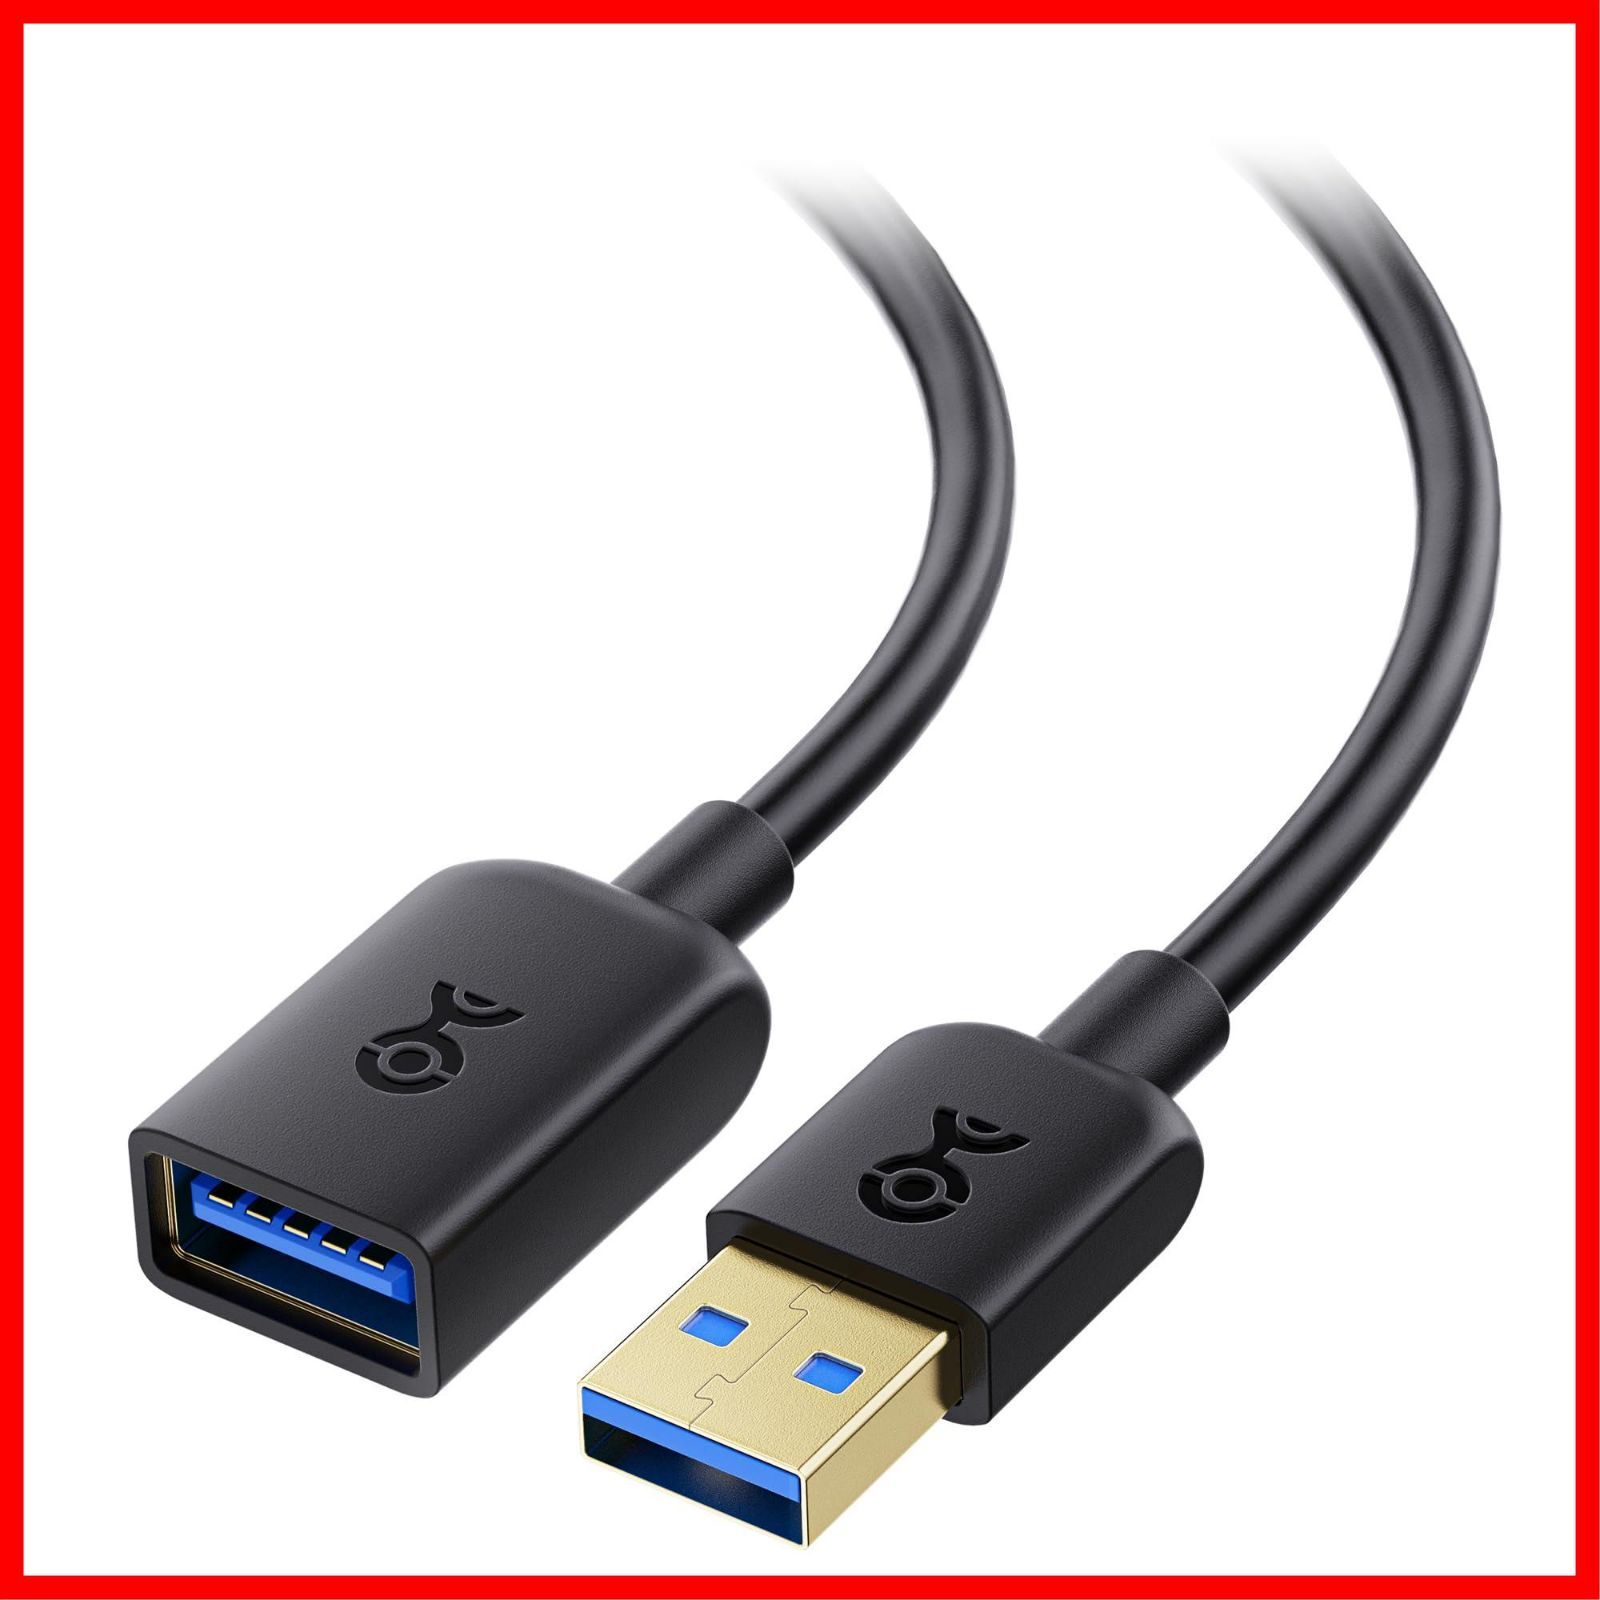 USB 延長 ケーブル 3m USB 延長ケーブル usb延長ケーブル おすすめネット - PCケーブル・コネクタ